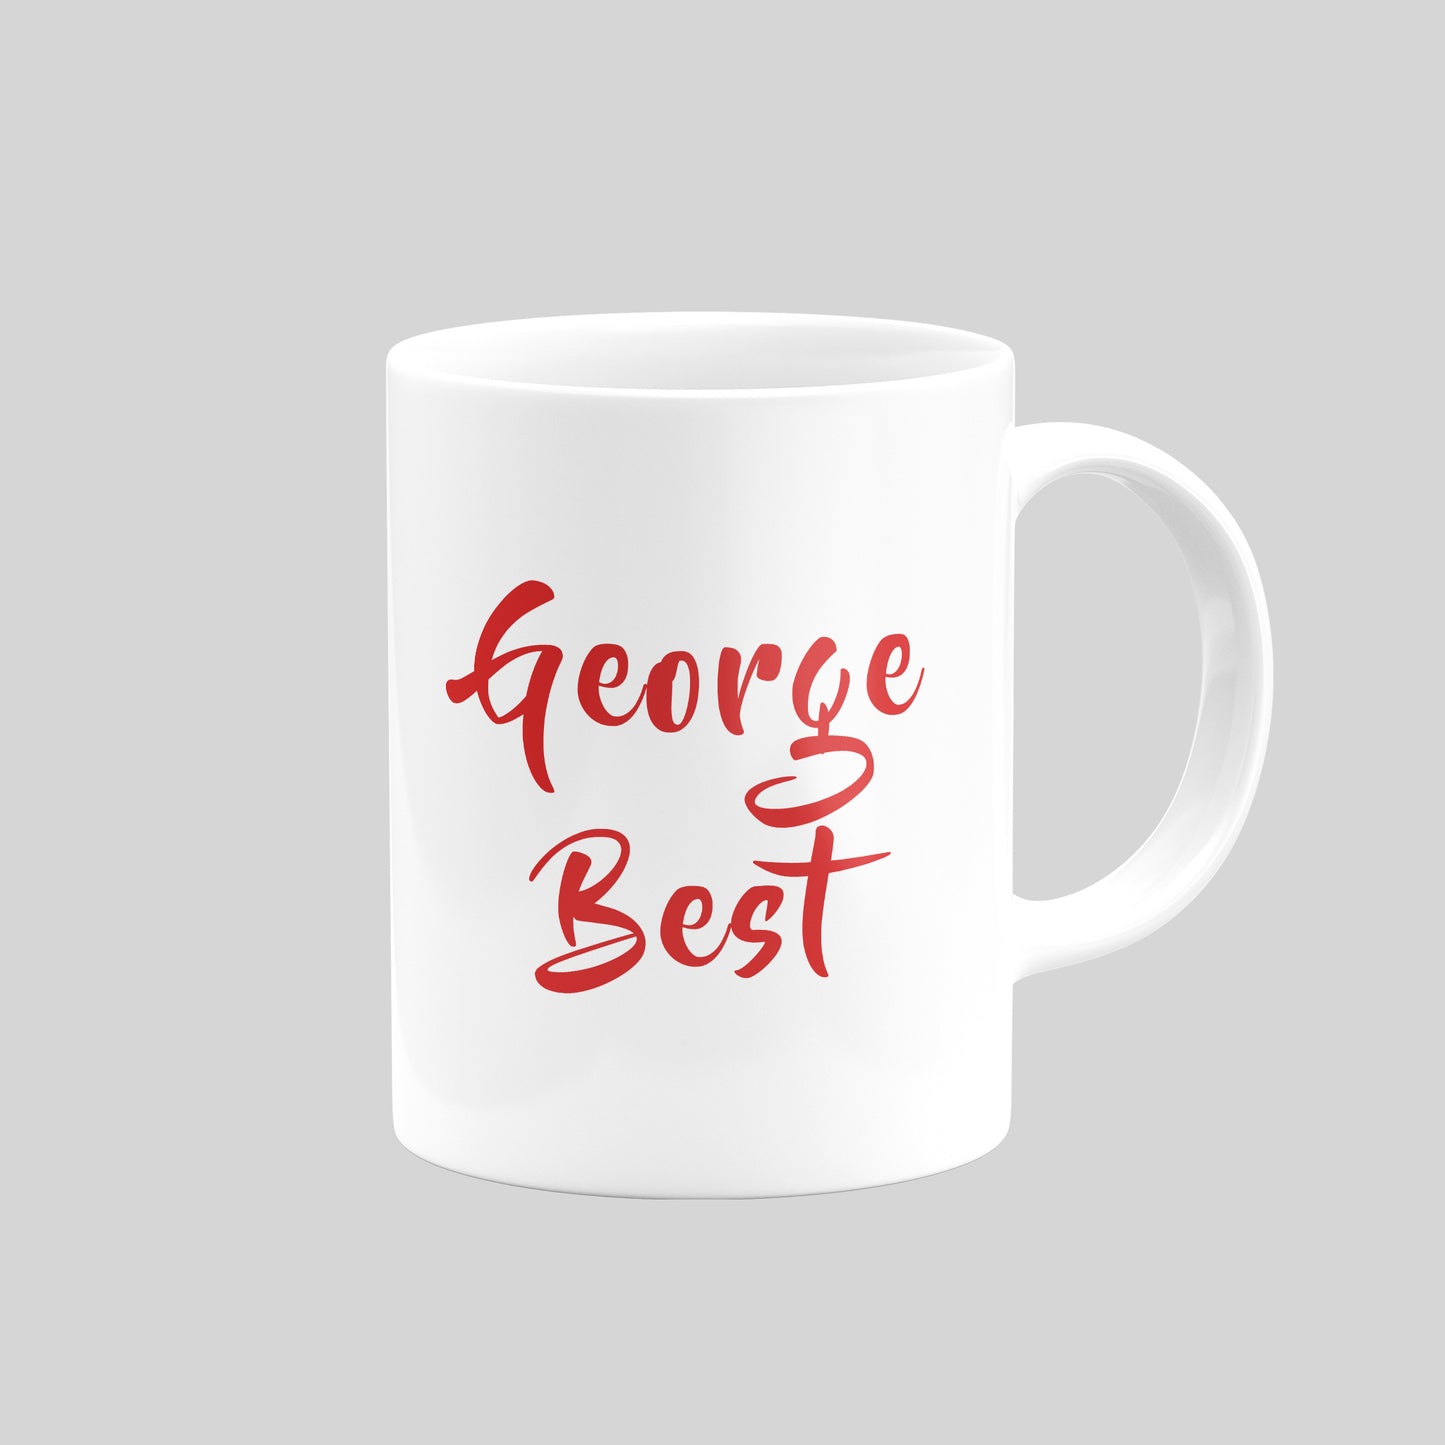 George Best Mug